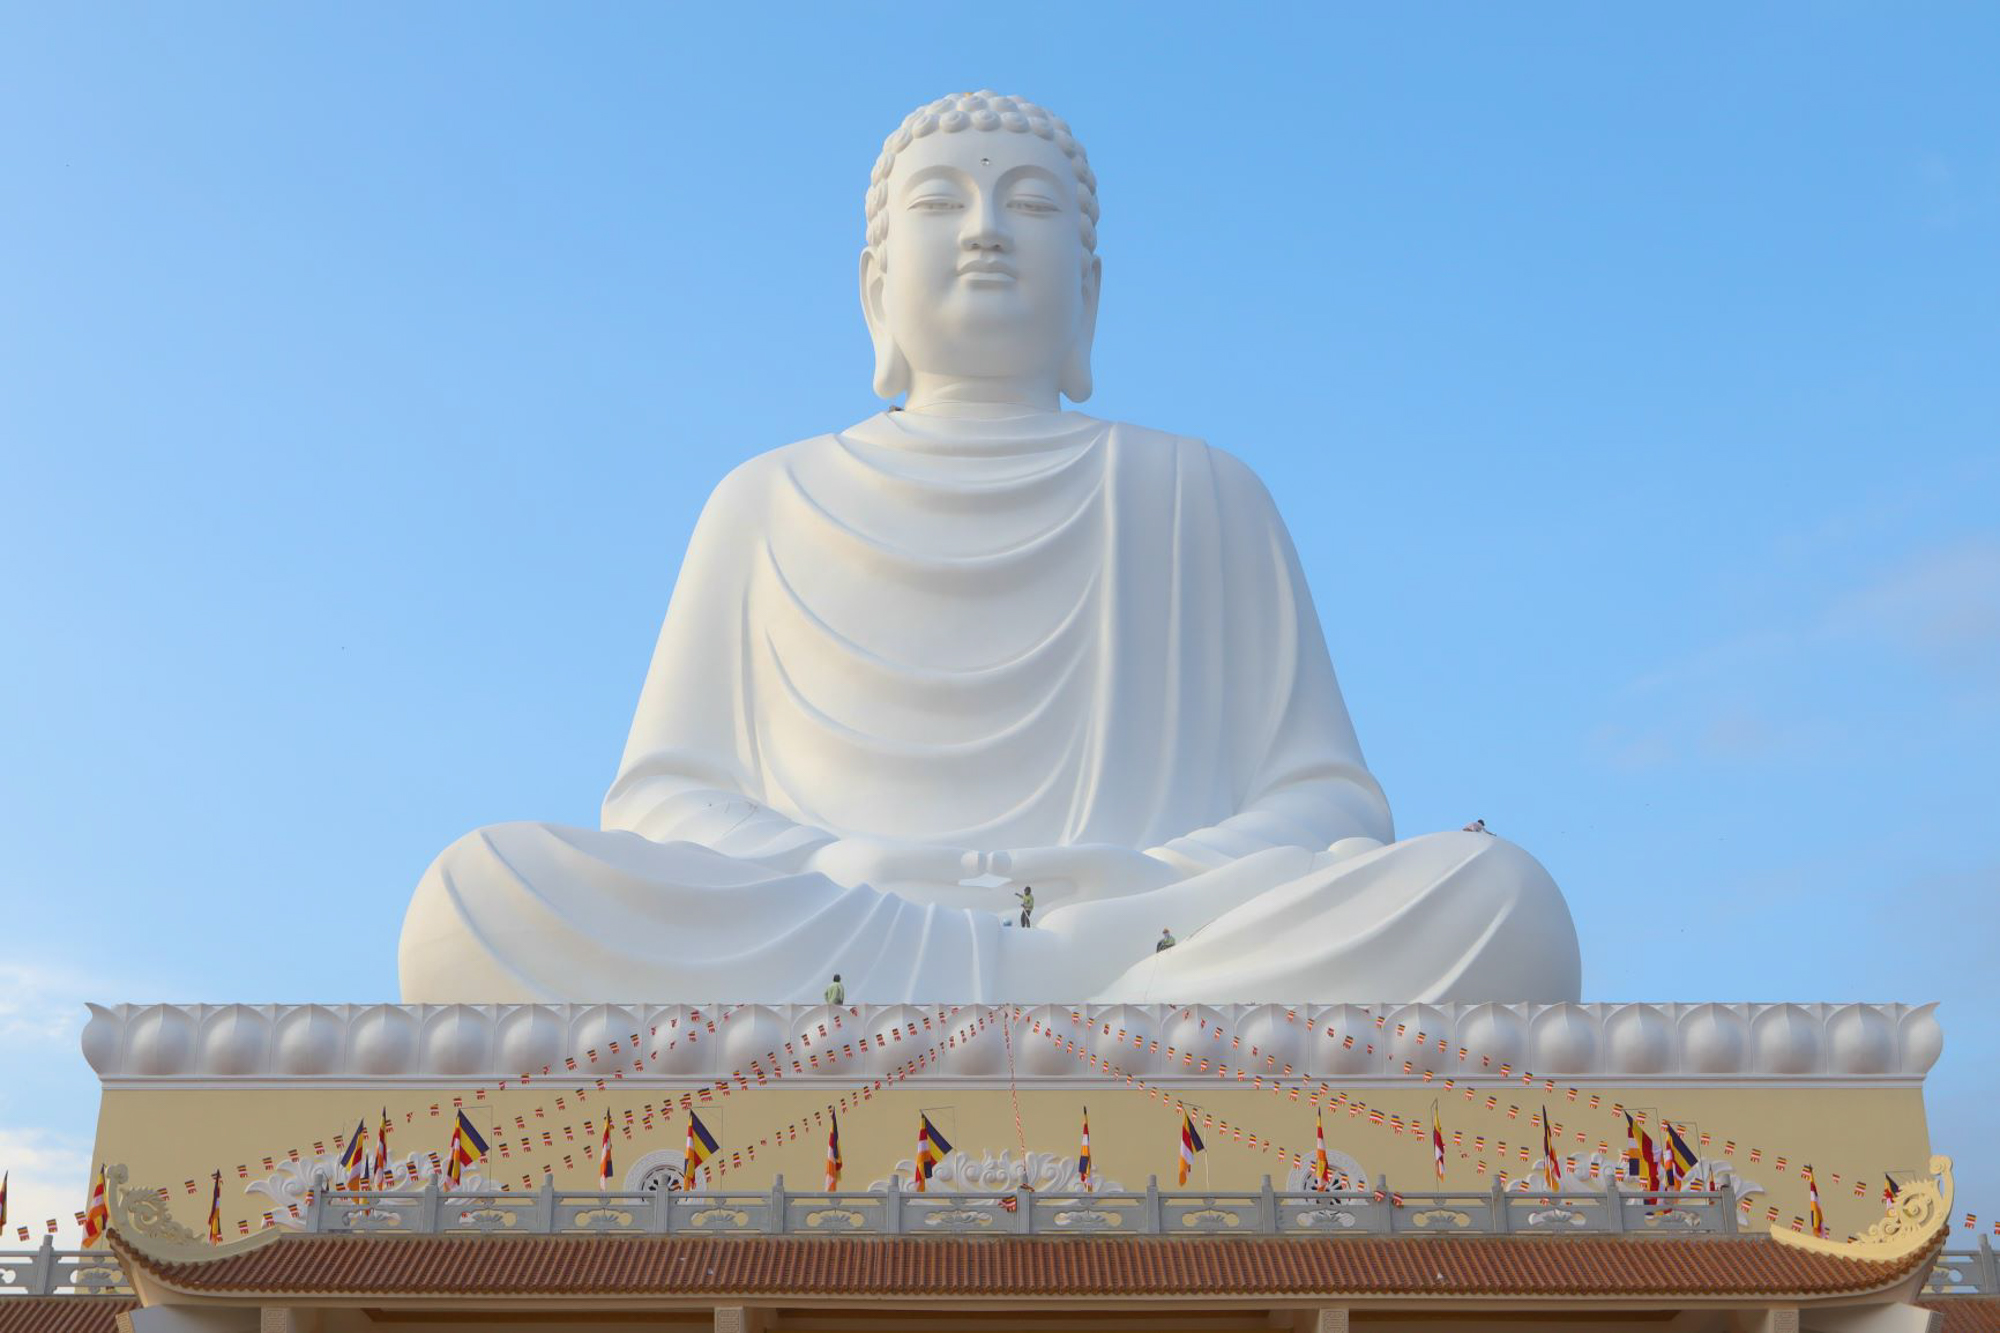 Được biết đến là tượng Phật cao nhất Đông Nam Á, bức tượng đầy ấn tượng này sẽ đưa bạn vào một hành trình tâm linh đầy cảm hứng khi ngắm nhìn. Tương truyền rằng tượng được chạm khắc bởi những nghệ nhân tài ba, đó là lý do tại sao nó rất đẹp và chân thật. Hãy ngắm nhìn và cảm nhận vẻ đẹp tuyệt vời của tượng Phật này.